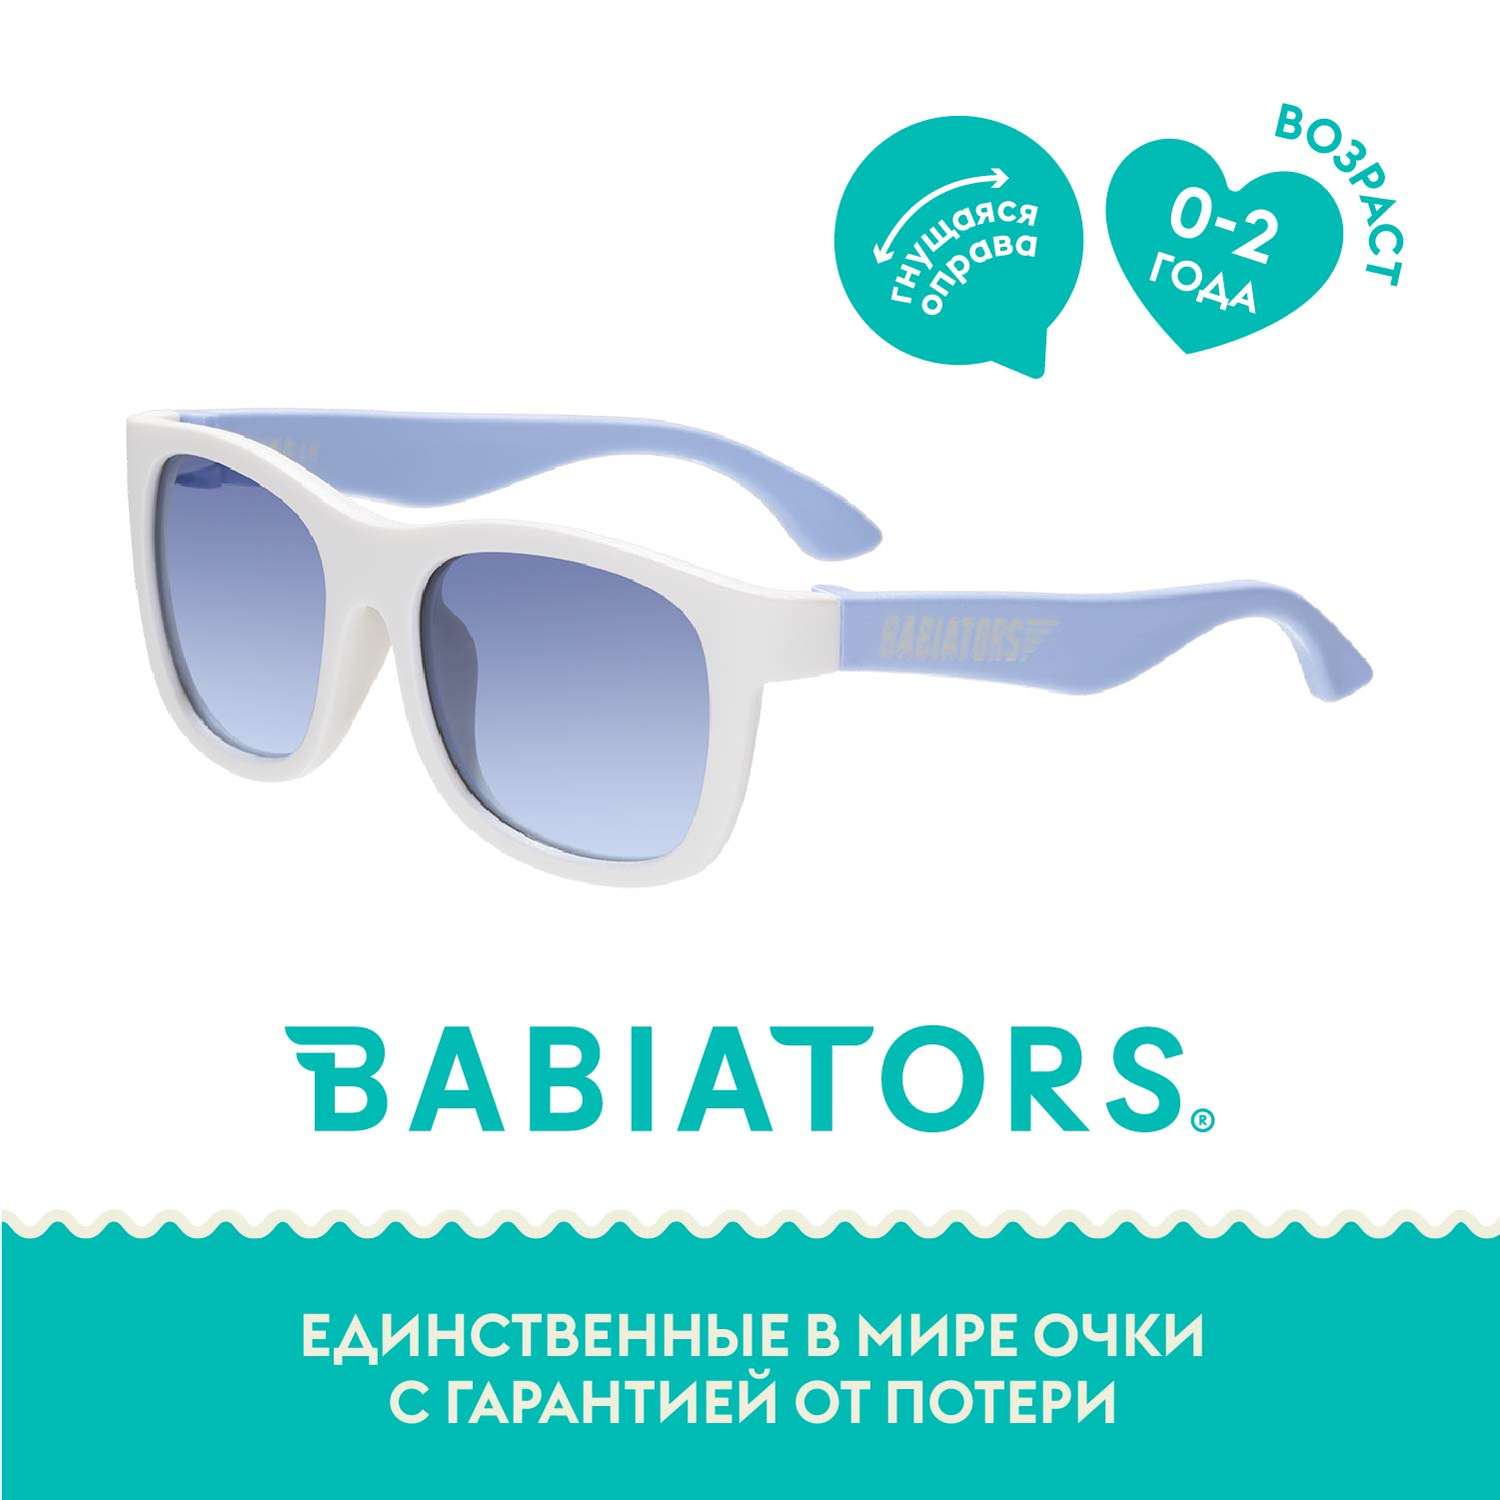 Солнцезащитные очки 0-2 Babiators NAV-046 - фото 1